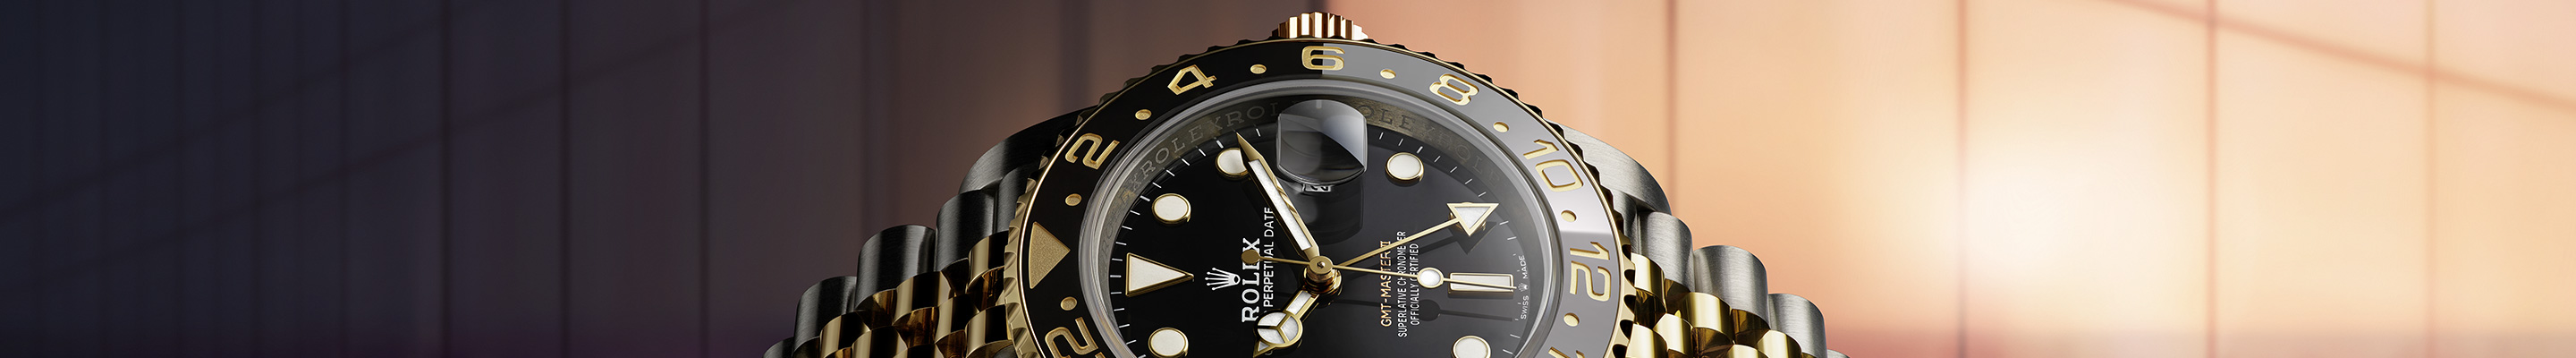 Rolex GMT-Master II Watches